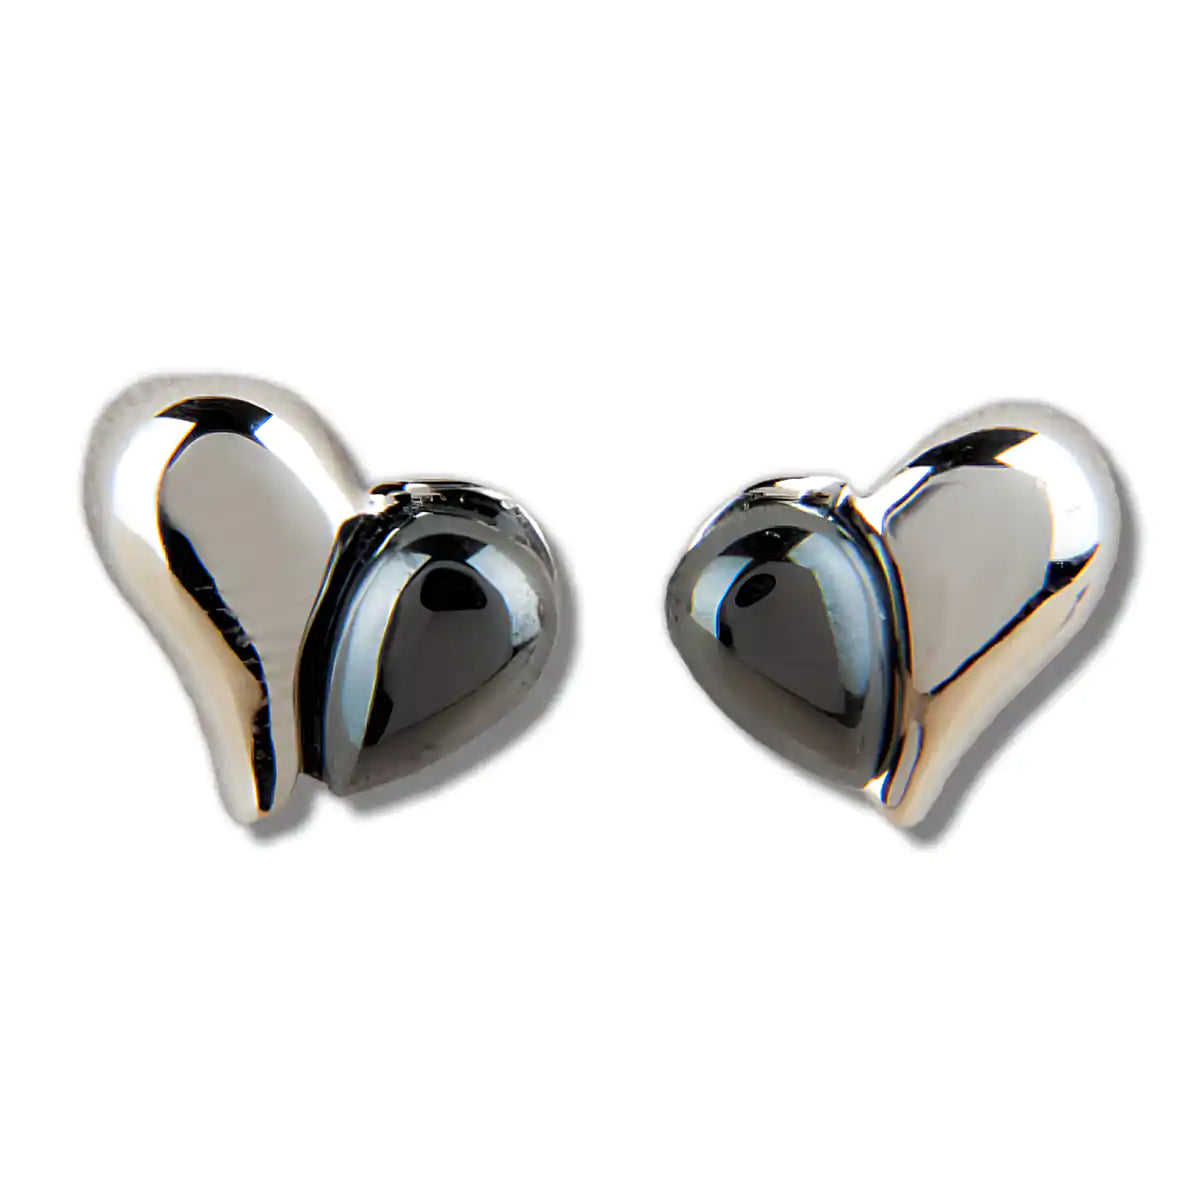 Hematite heart's desire earrings